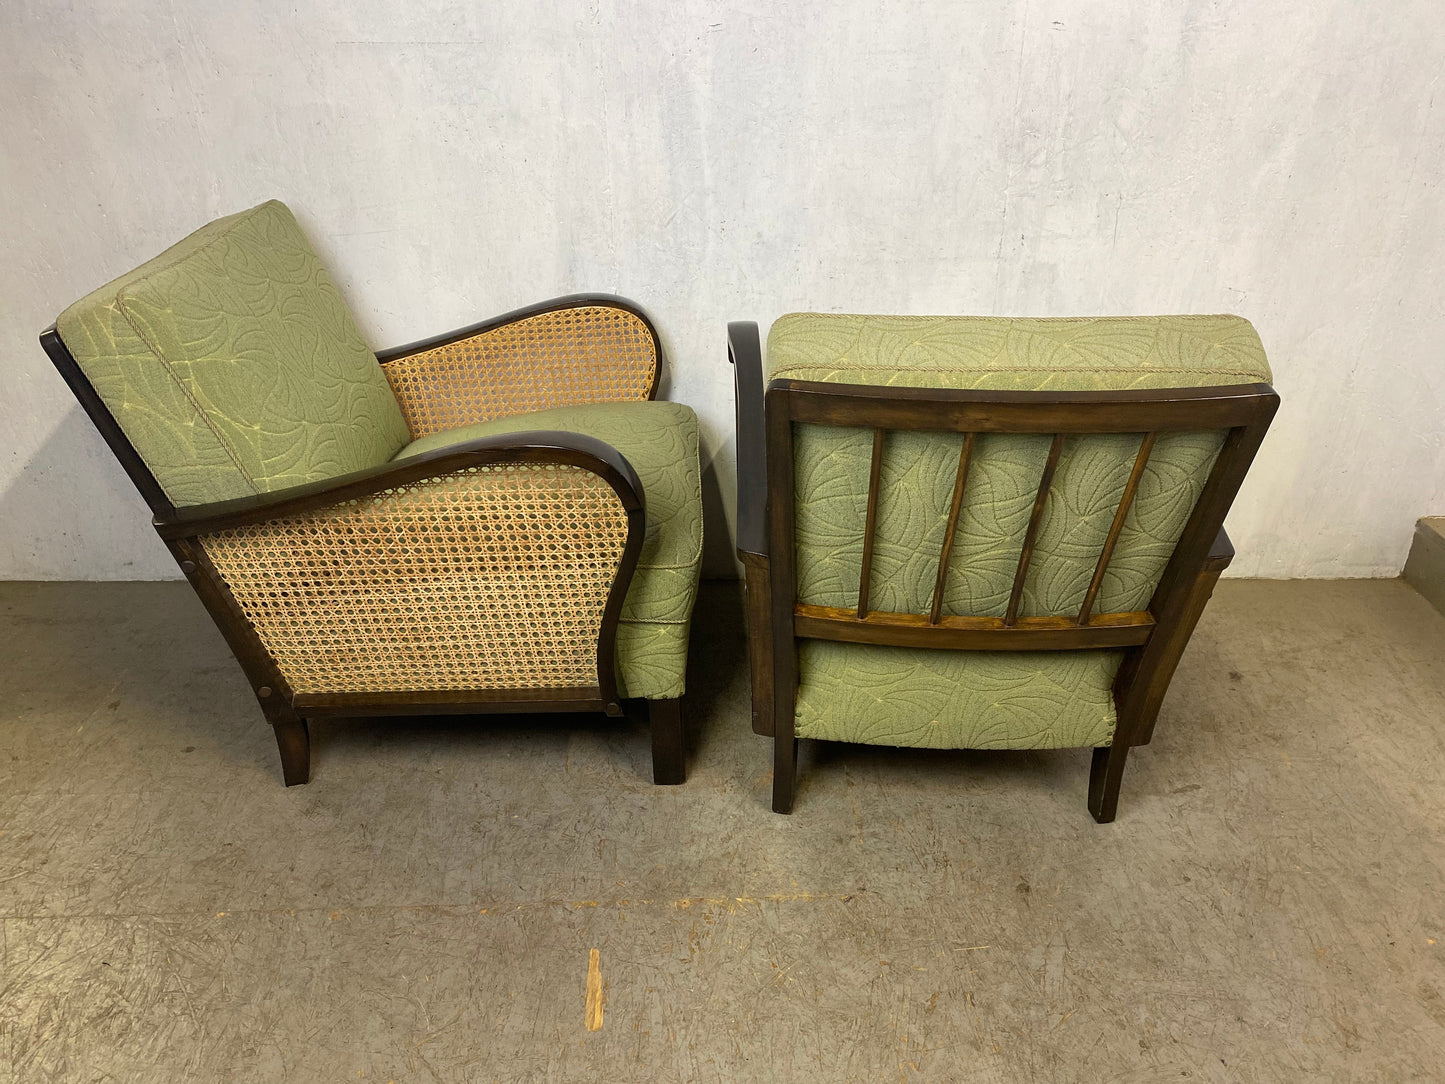 Zwei wunderschöne 50er Jahre Sessel in absolutem top Zustand